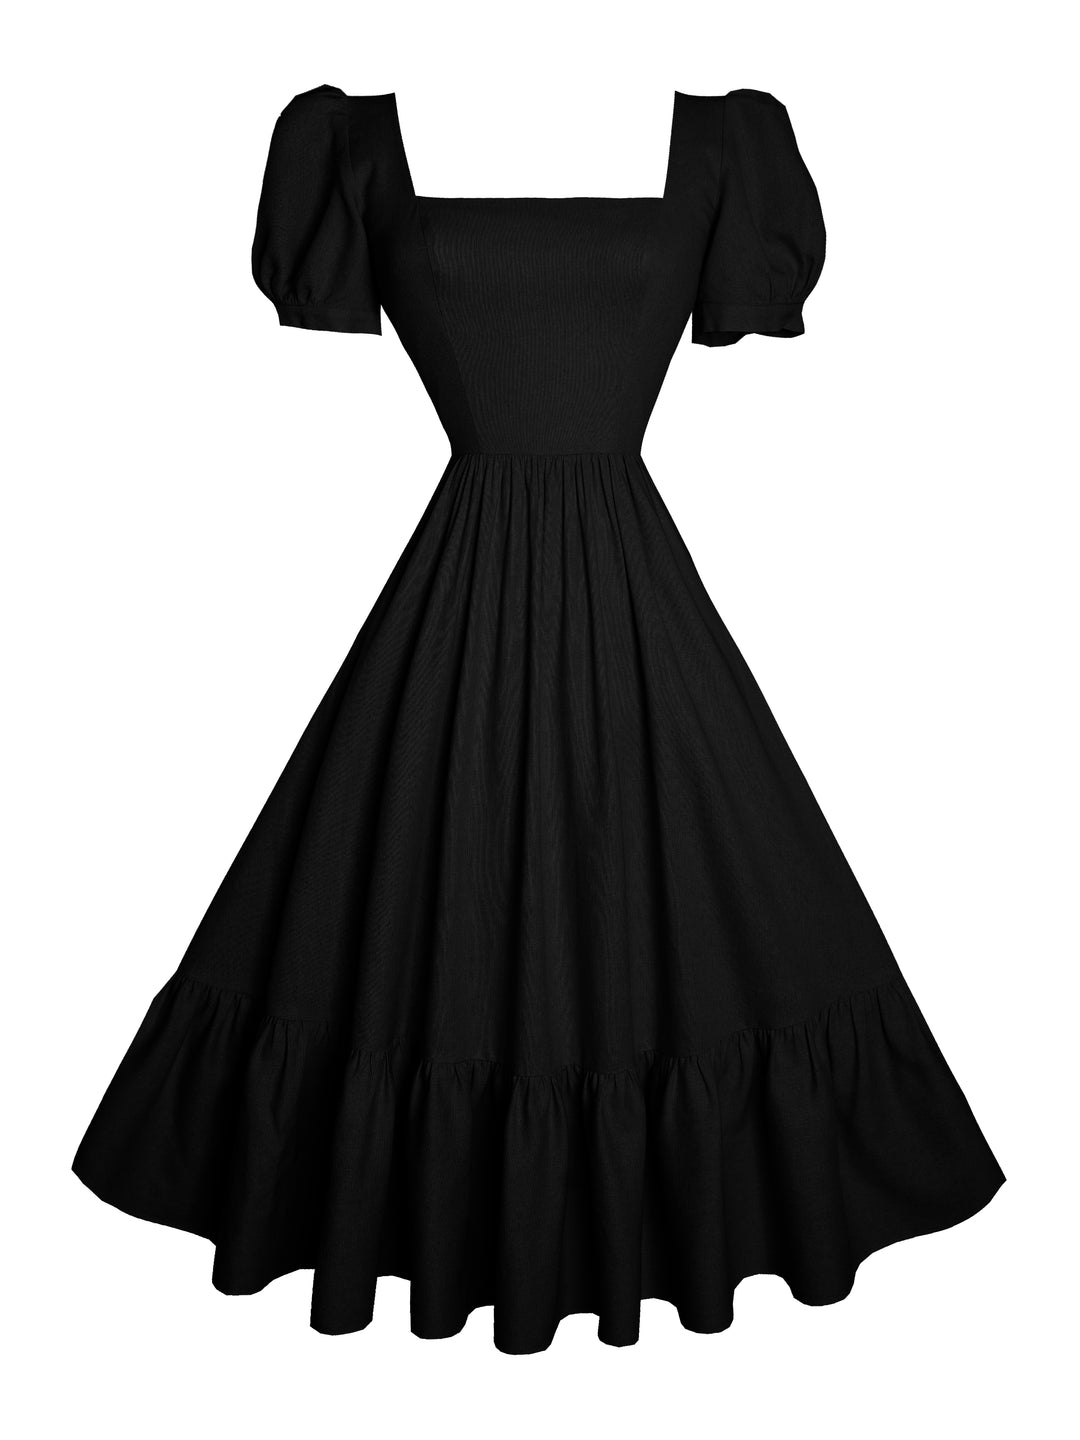 MTO - Isadora Dress in Midnight Black Linen